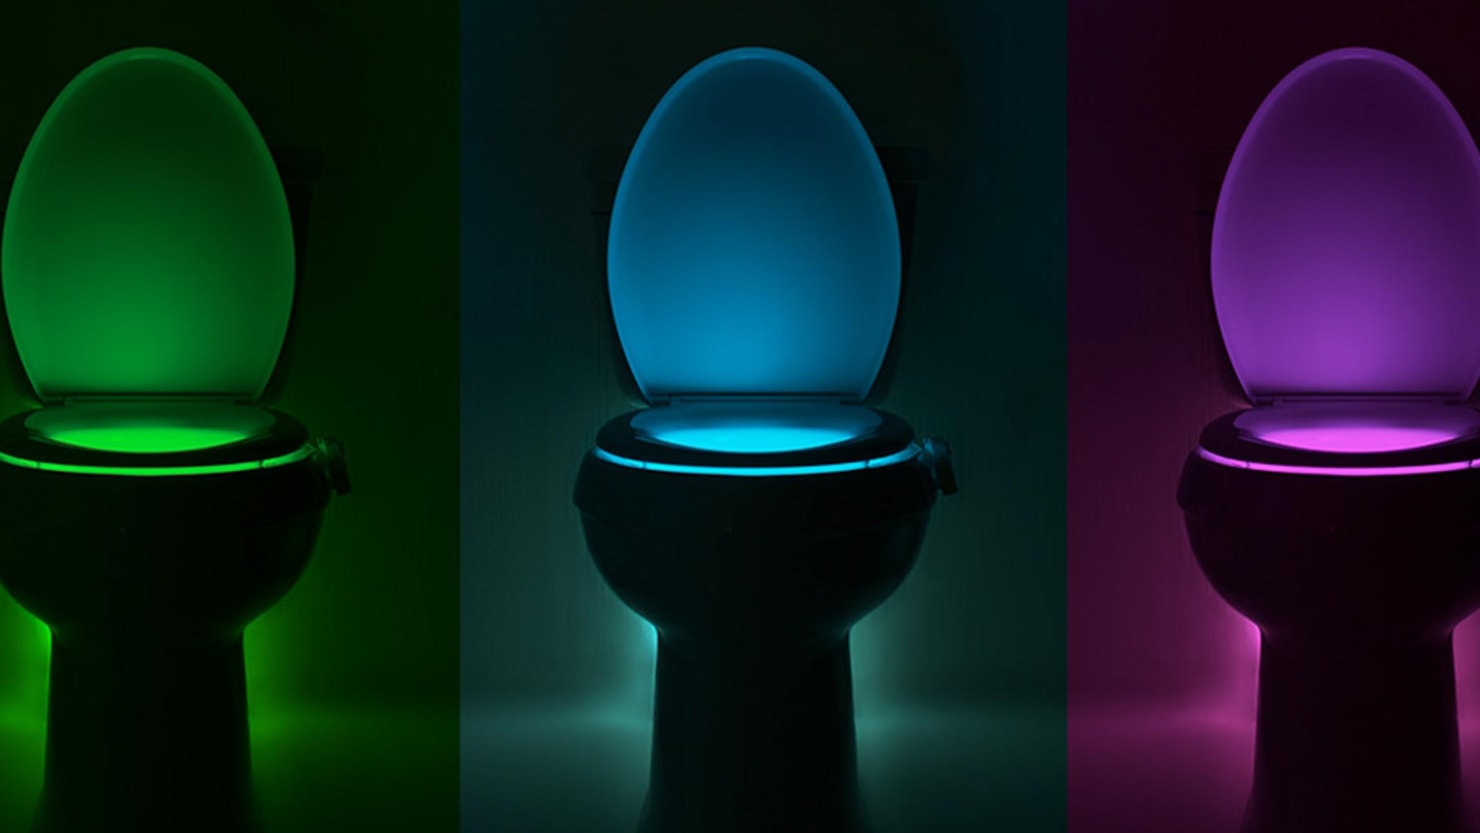 Illumibowl IllumiBowl Toilet Night-Light